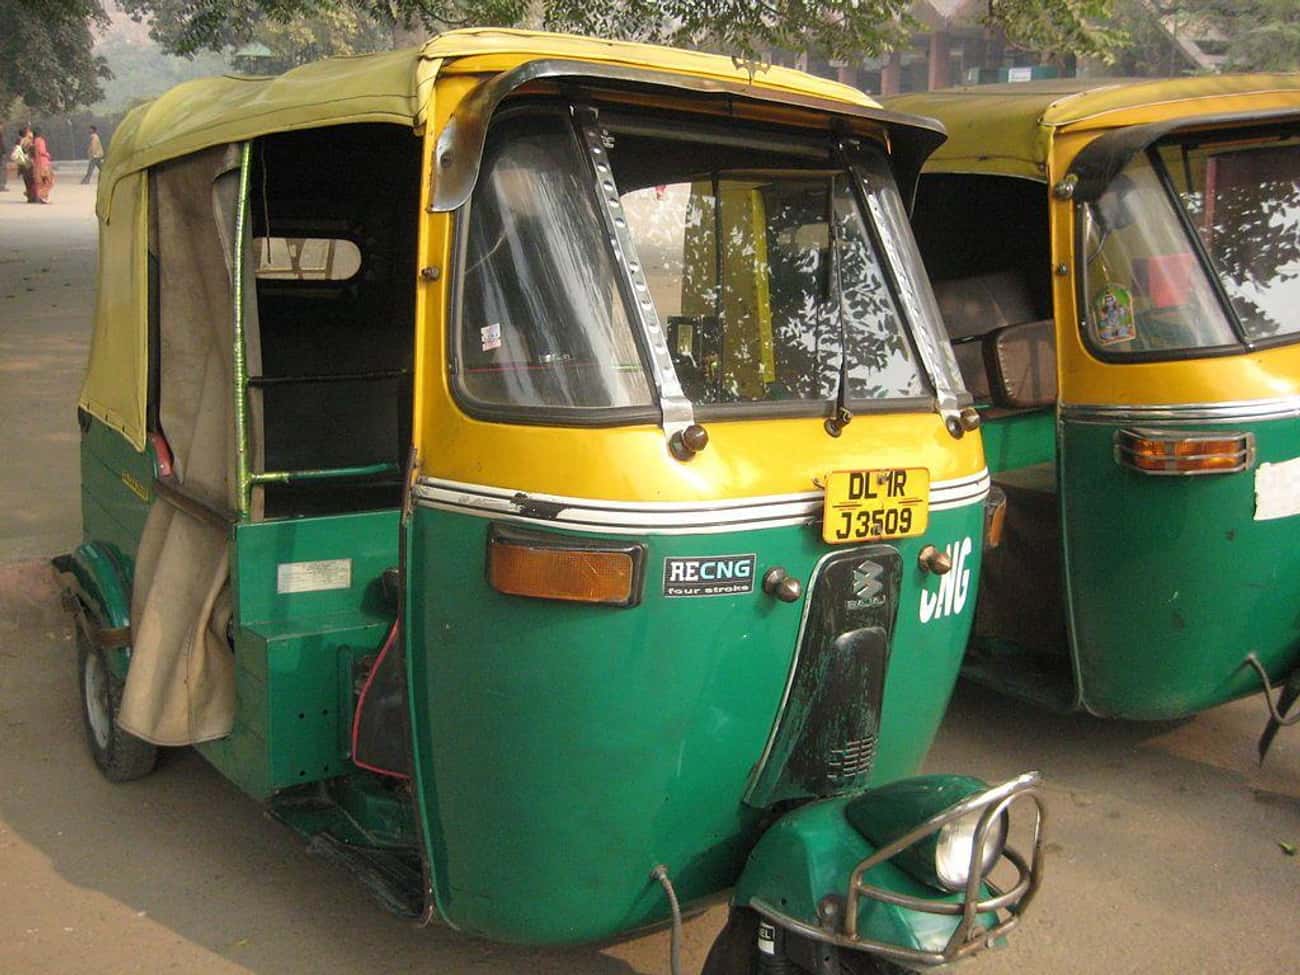 Gowri Shankar - The Rickshaw Killer